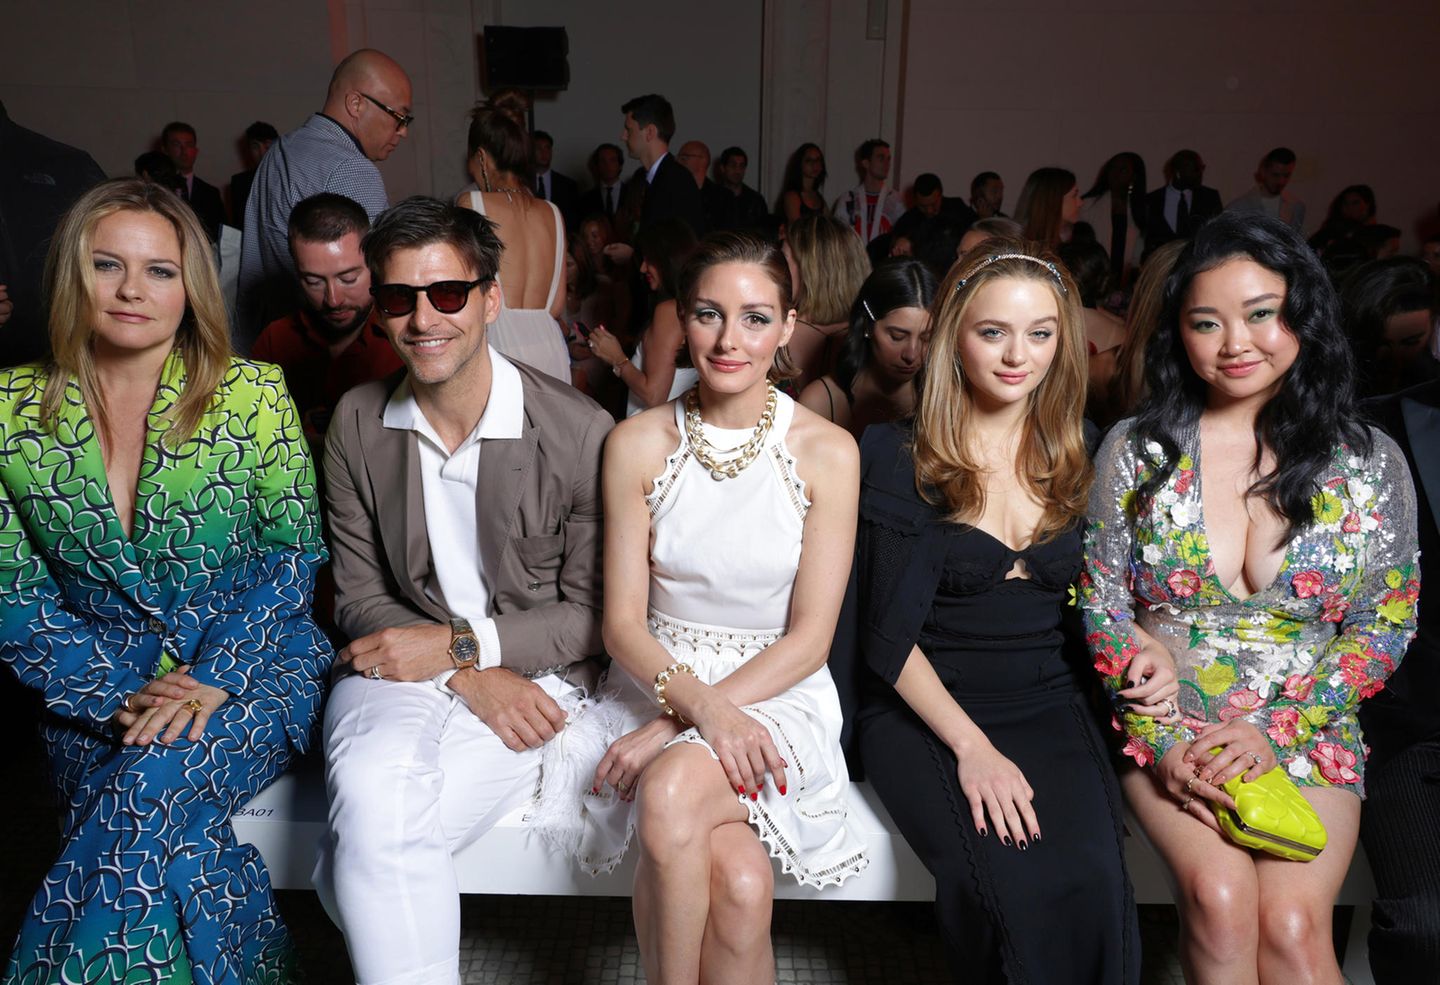 Style-Quintett bei Elie Saab: Alicia Silverstone, Johannes Huebl, Olivia Palermo, Joey King und Lana Condor sitzen bei der Haute-Couture-Schau des Glamour-Labels gemeinsam in der Front Row.